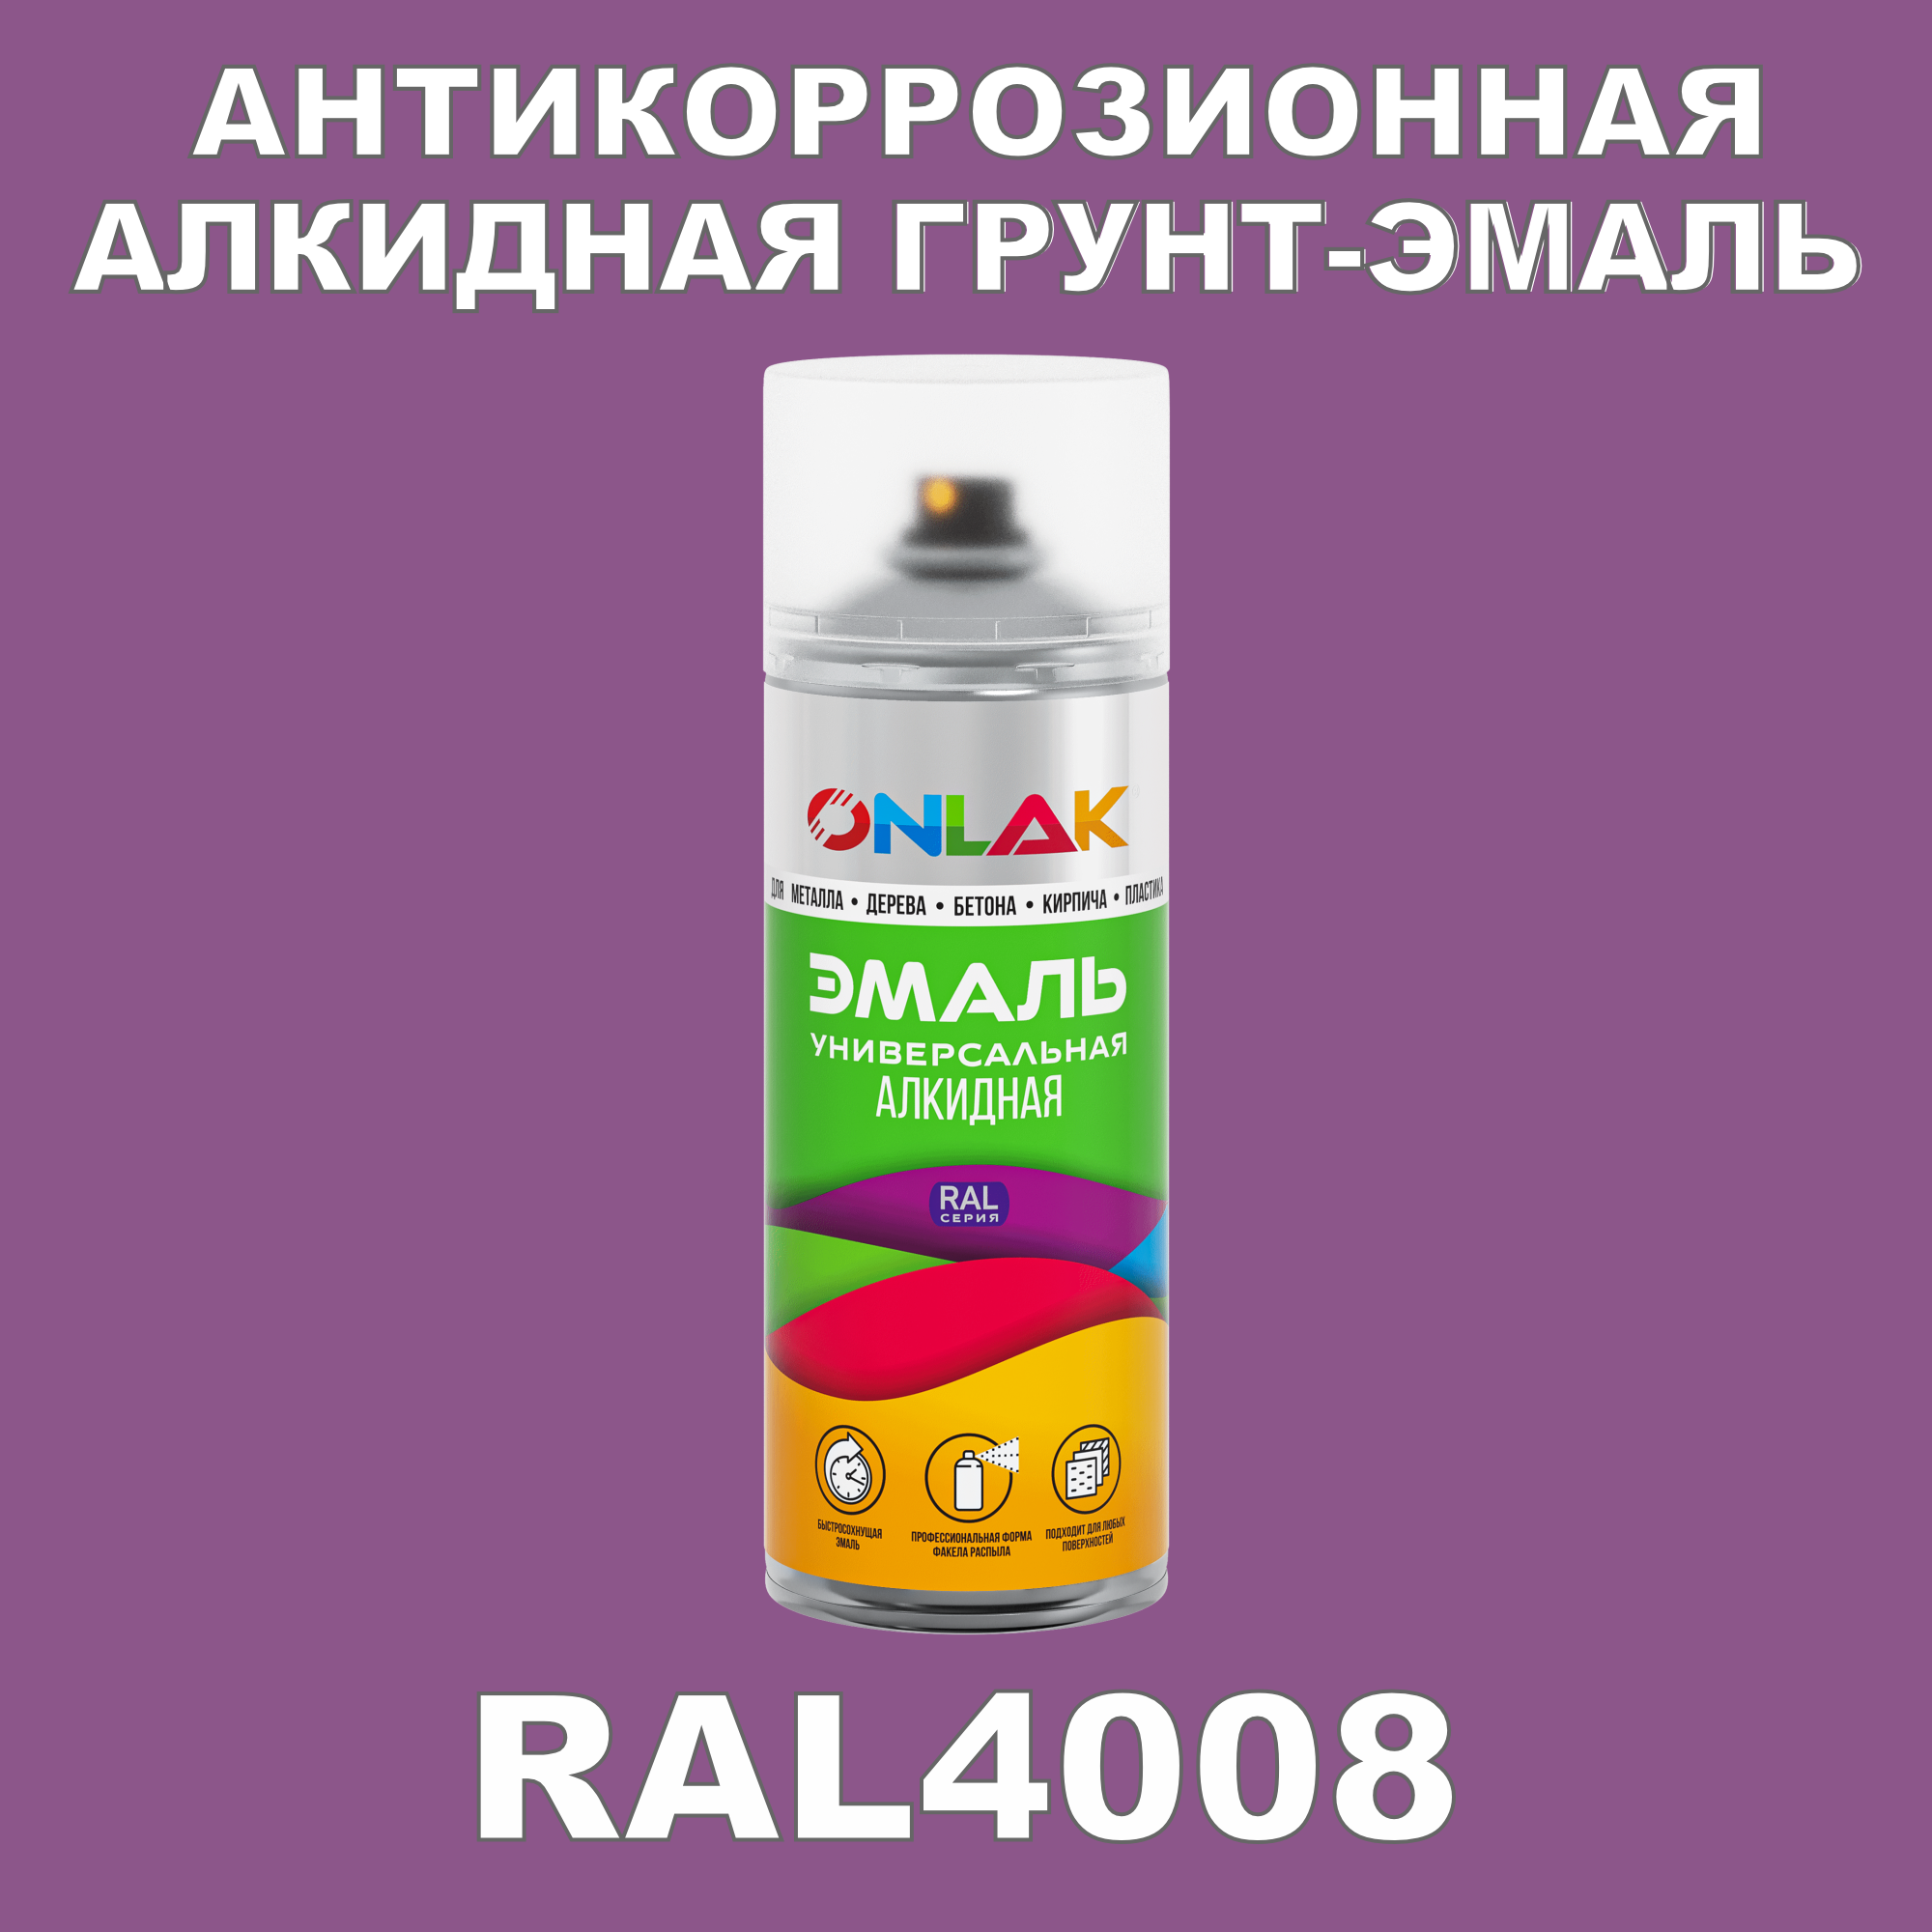 Антикоррозионная грунт-эмаль ONLAK RAL4008 полуматовая для металла и защиты от ржавчины artuniq color violet ной грунт для аквариума фиолетовый 1 кг